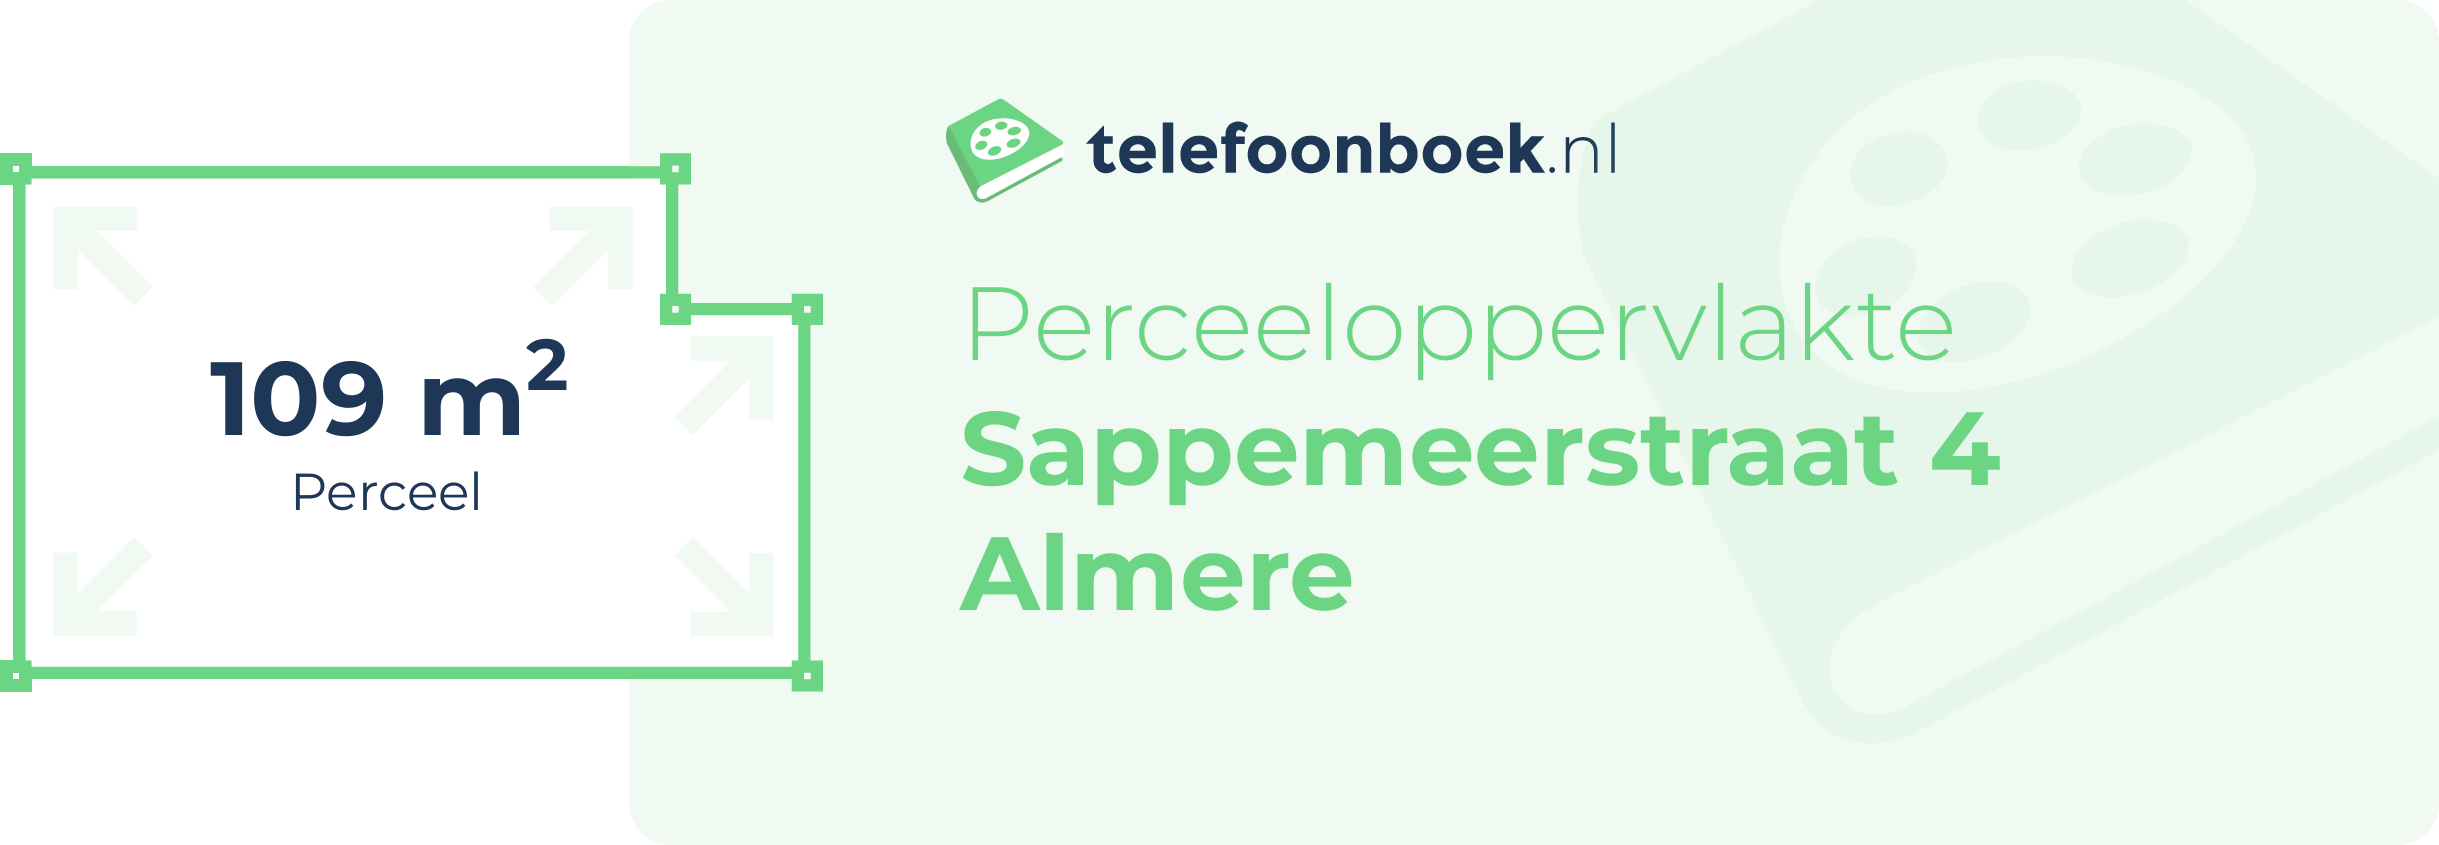 Perceeloppervlakte Sappemeerstraat 4 Almere